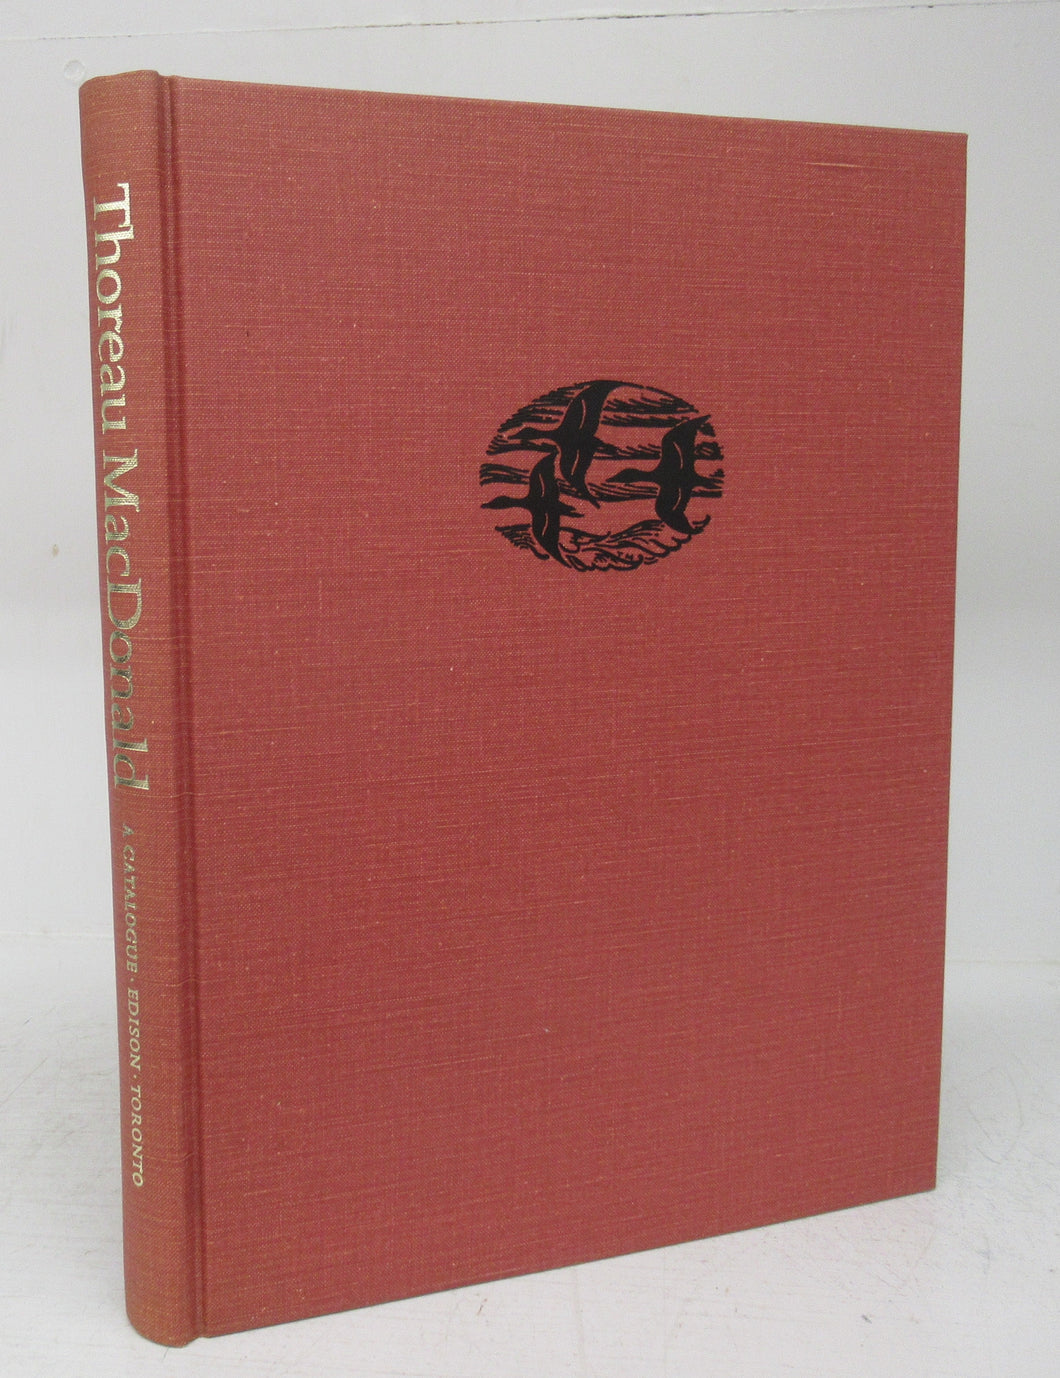 Thoreau MacDonald: A Catalogue of Design and Illustration